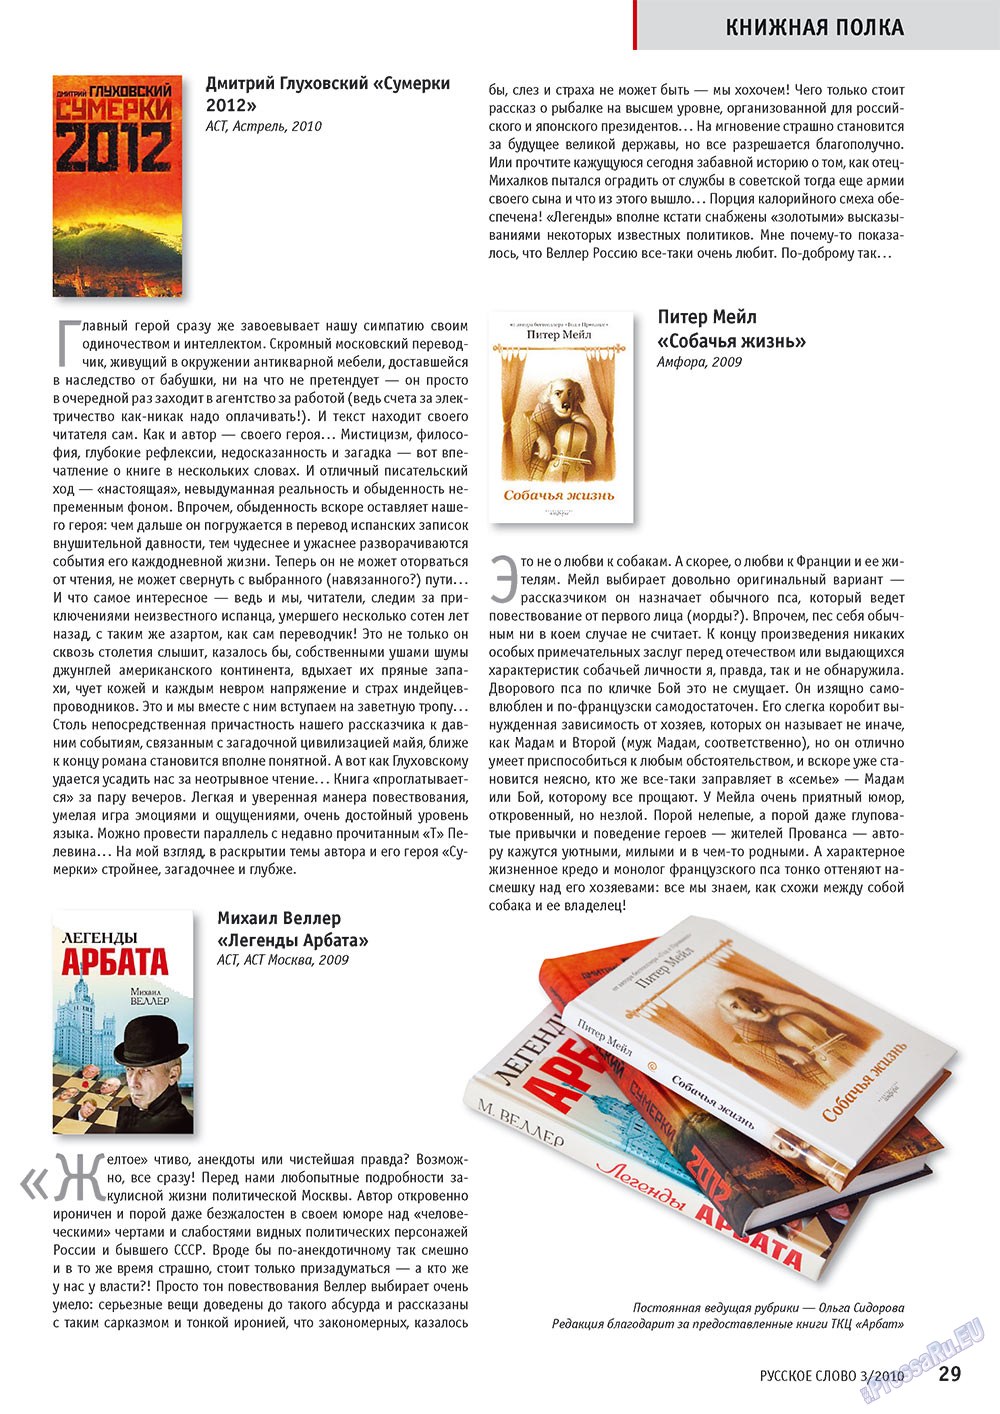 Русское слово, журнал. 2010 №3 стр.31